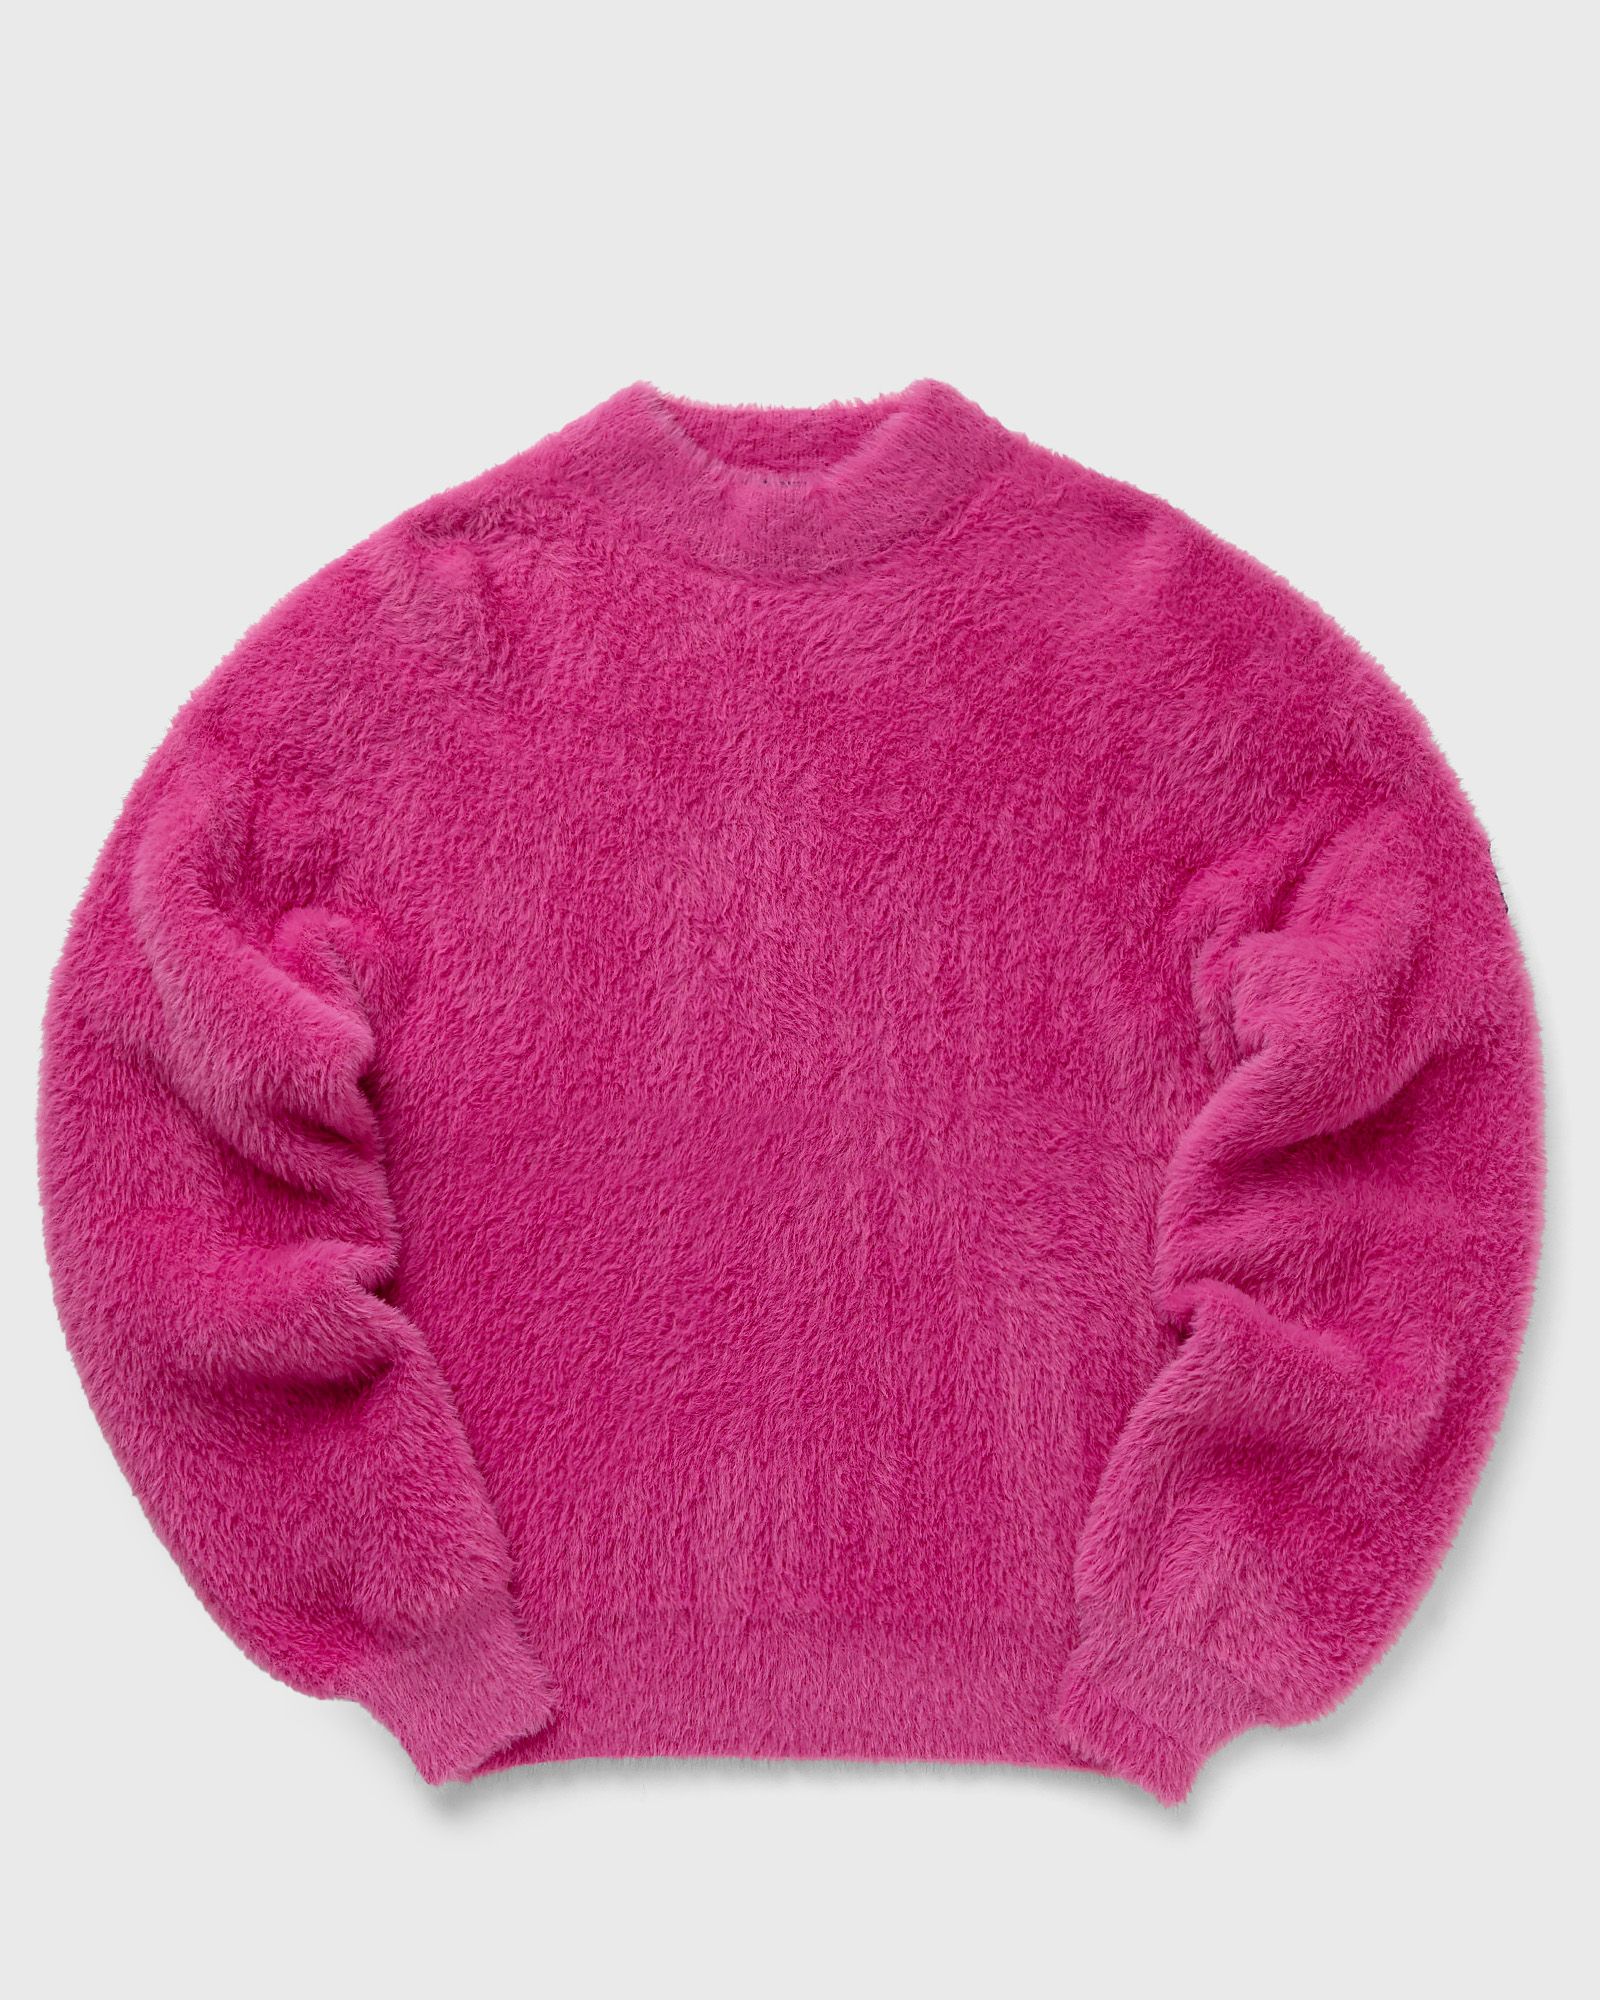 ROTATE Birger Christensen - printed fluffy knit shirt women sweatshirts pink in größe:l